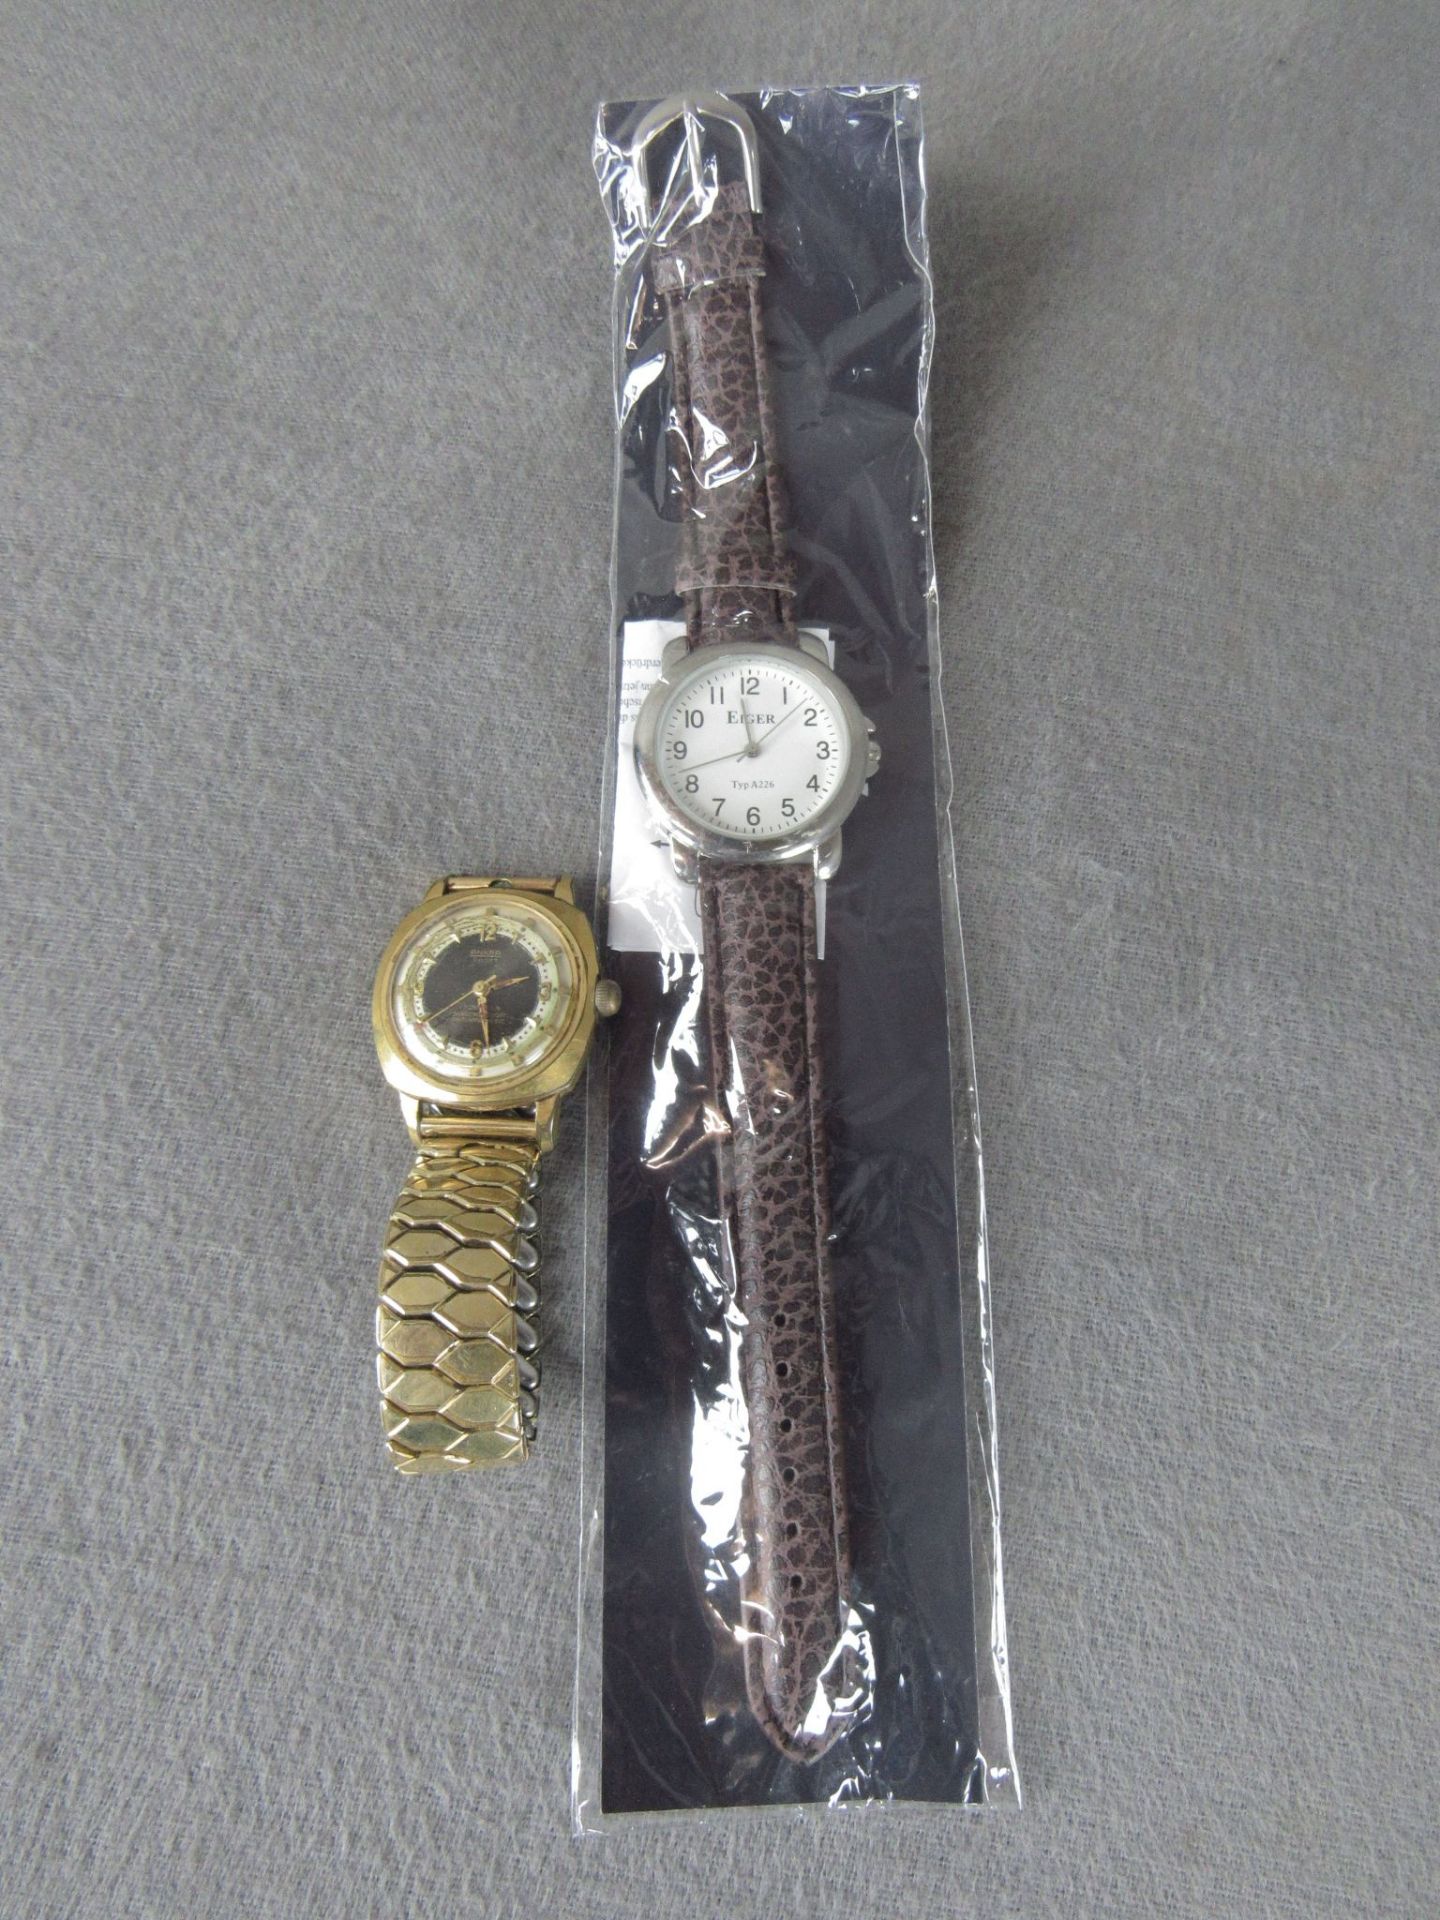 Konvolut bestehend aus 2 Uhren: 1 Ankra Sport Uhr läuft an und 1x Eiger Uhr original Verpackt